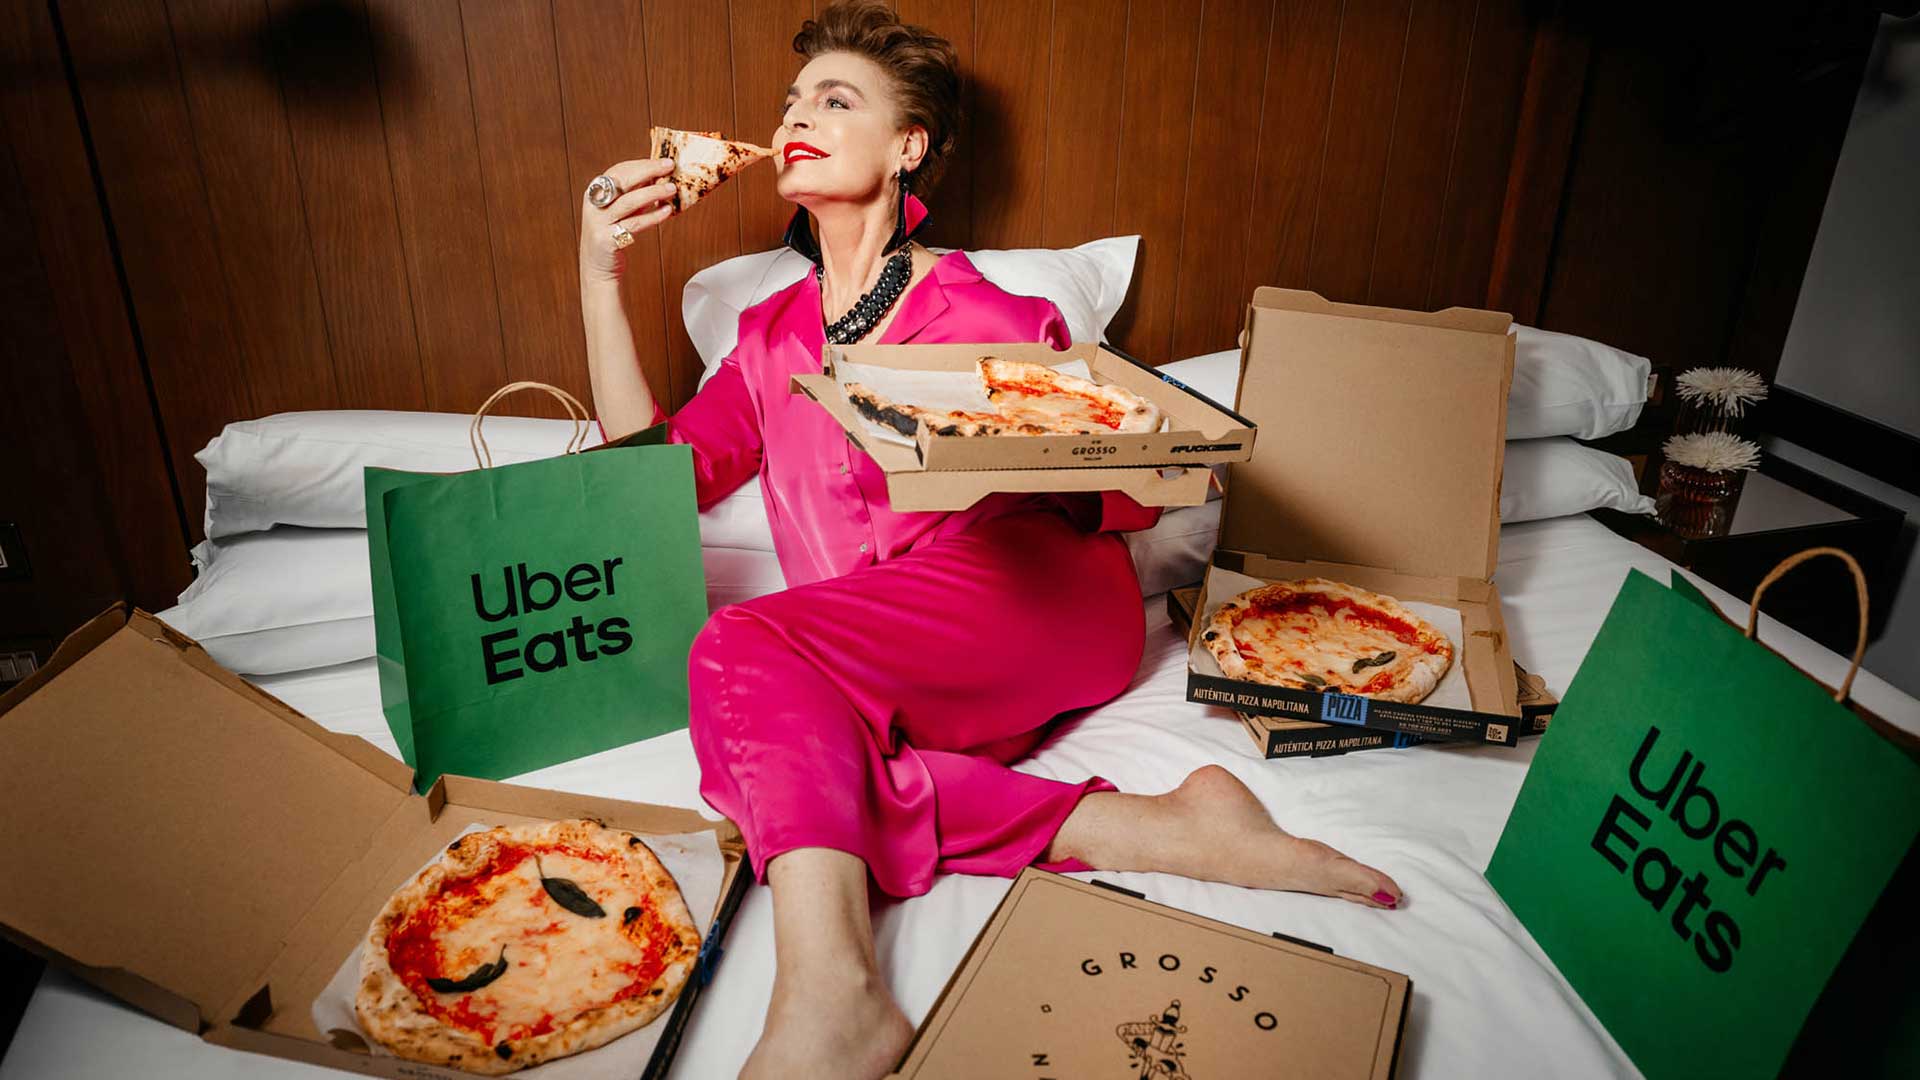 Imagen de Antonia Dell’Atte celebra su cumpleaños desayunando pizza